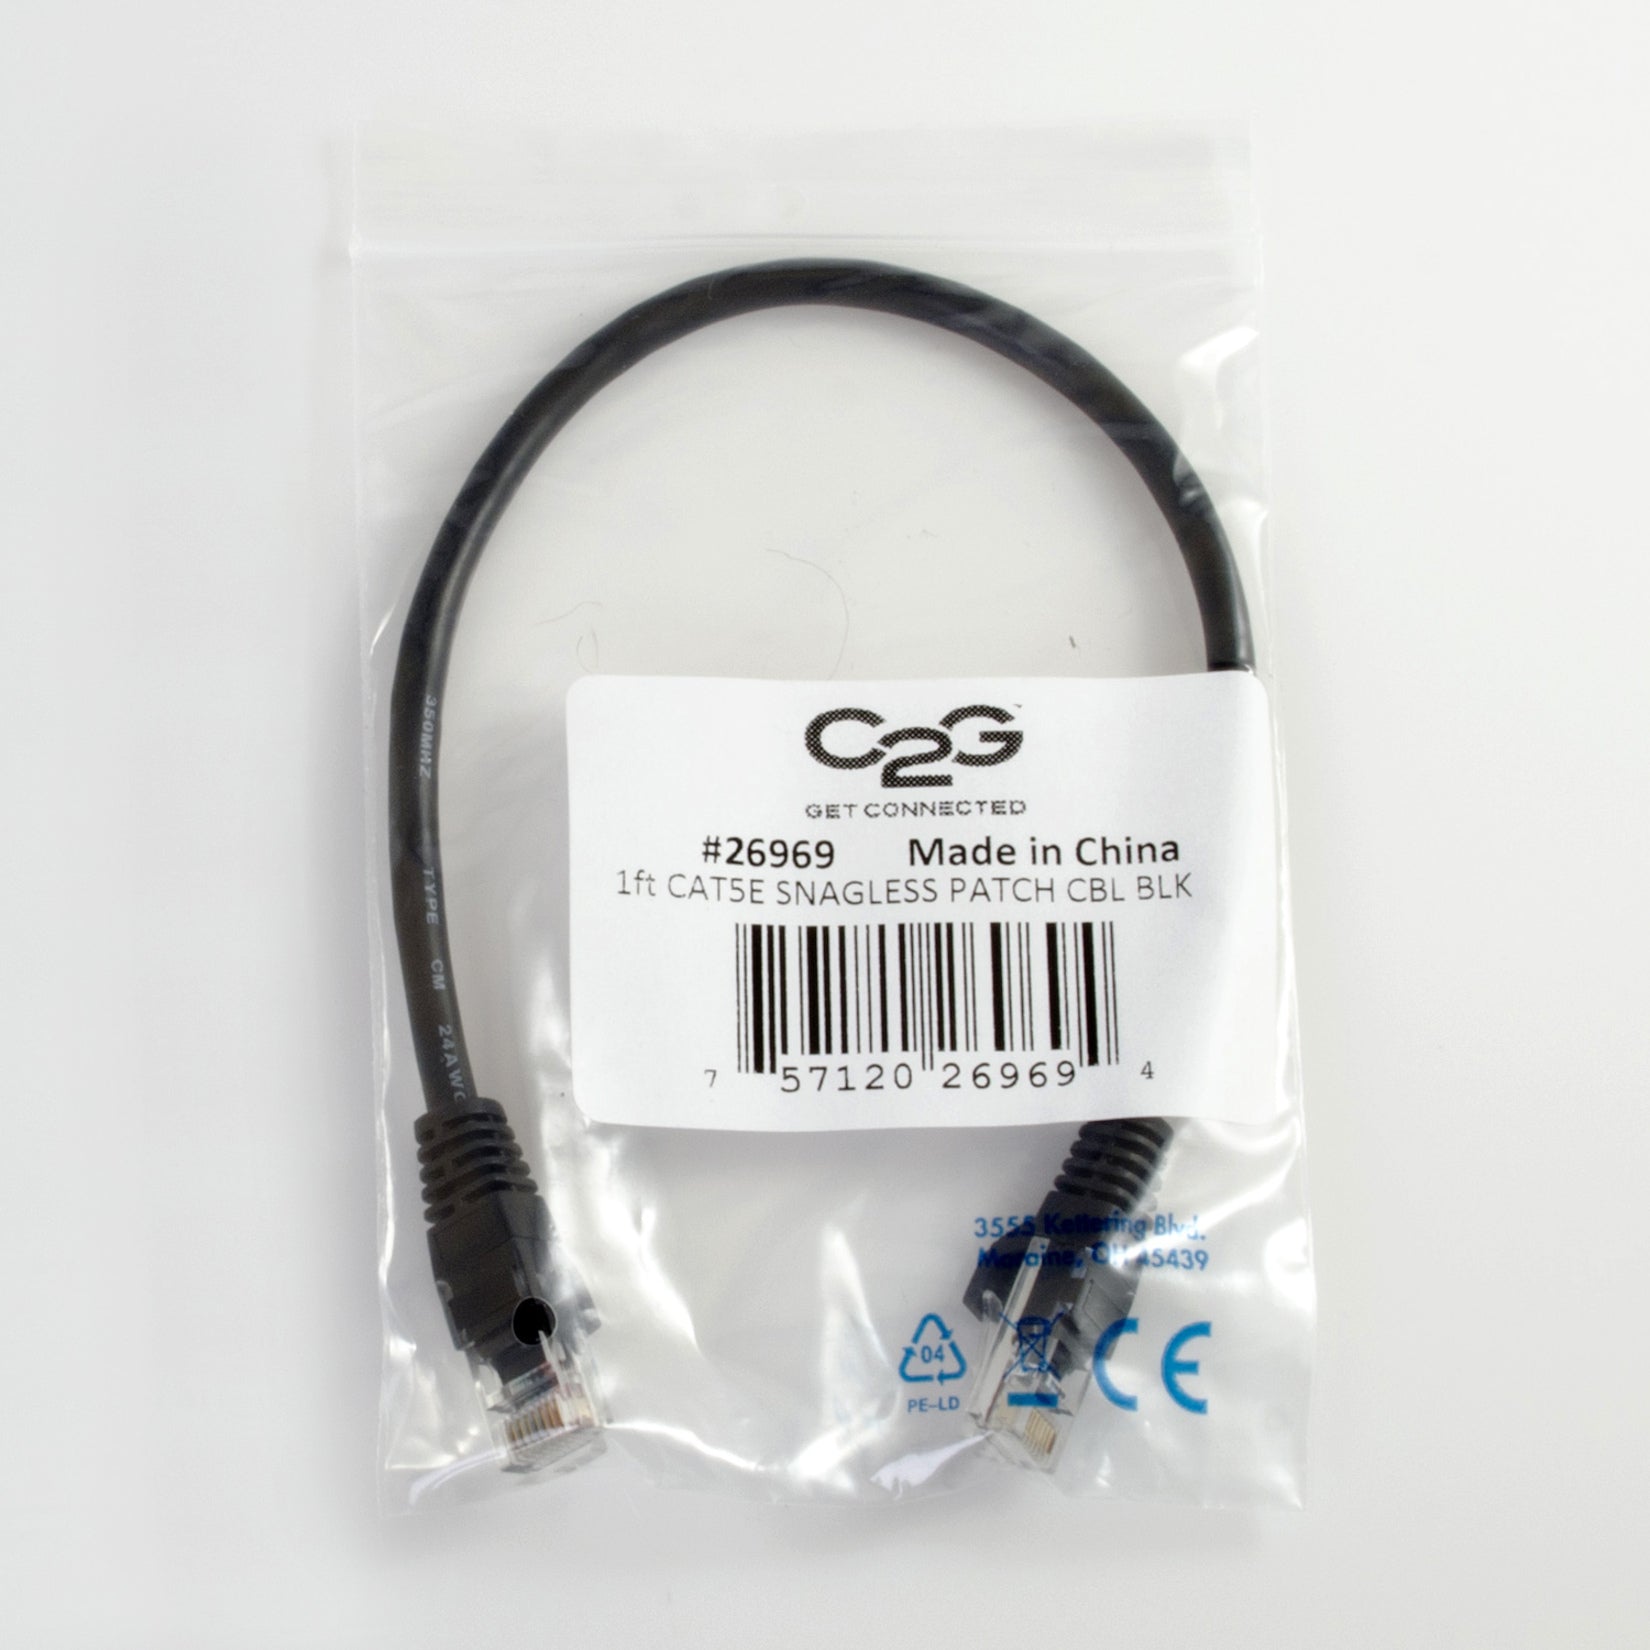 C2G 26969 1ft Cat5e Câble Ethernet Non Blindé Noir Garantie à Vie Marque traduite : C2G (Cables To Go)